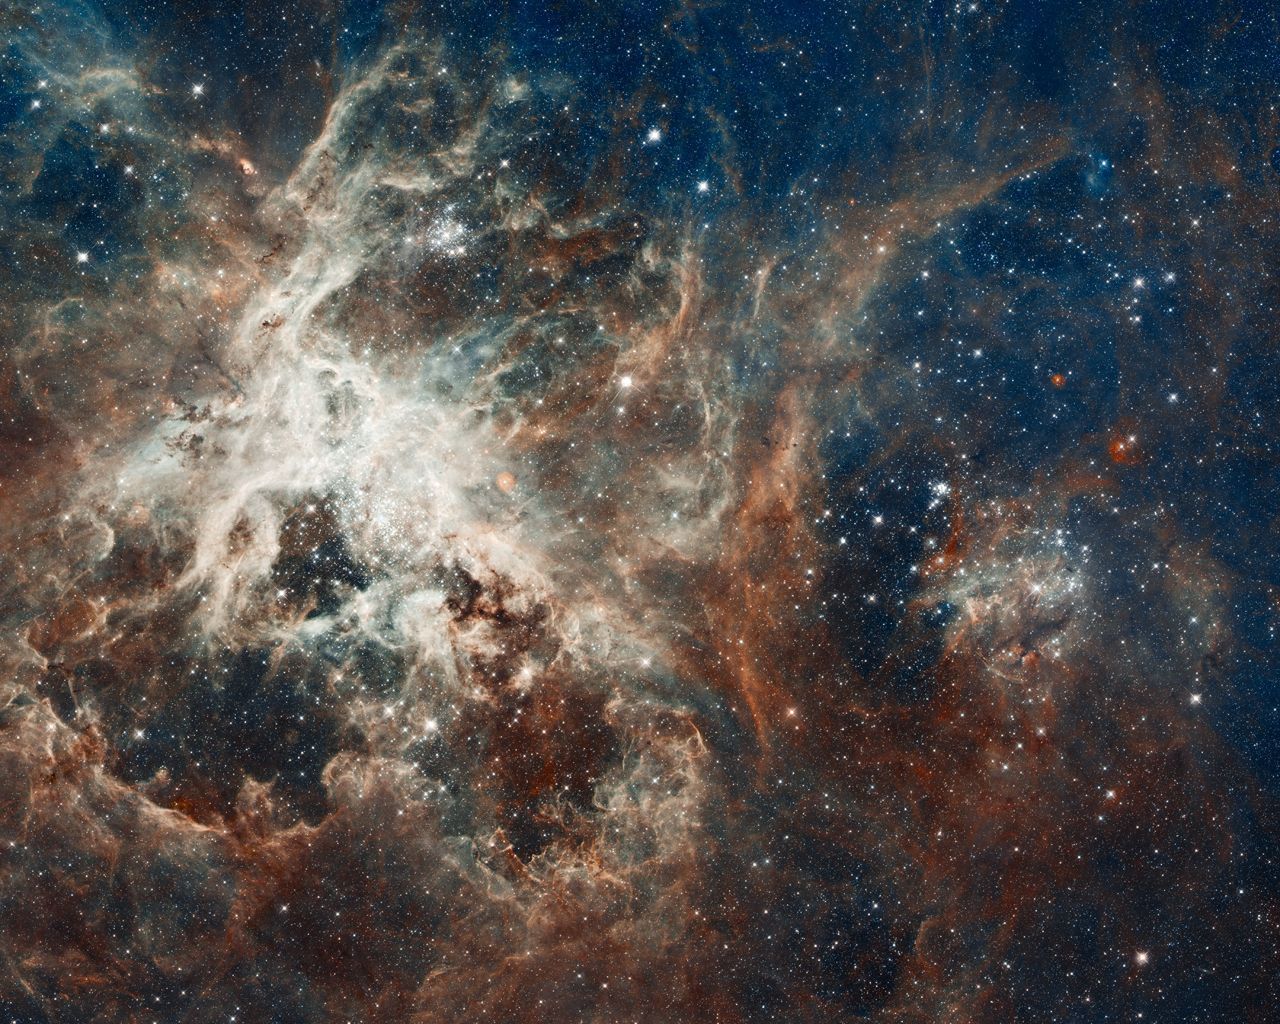 Nejlepší fotky Hubbleova teleskopu za 25 let